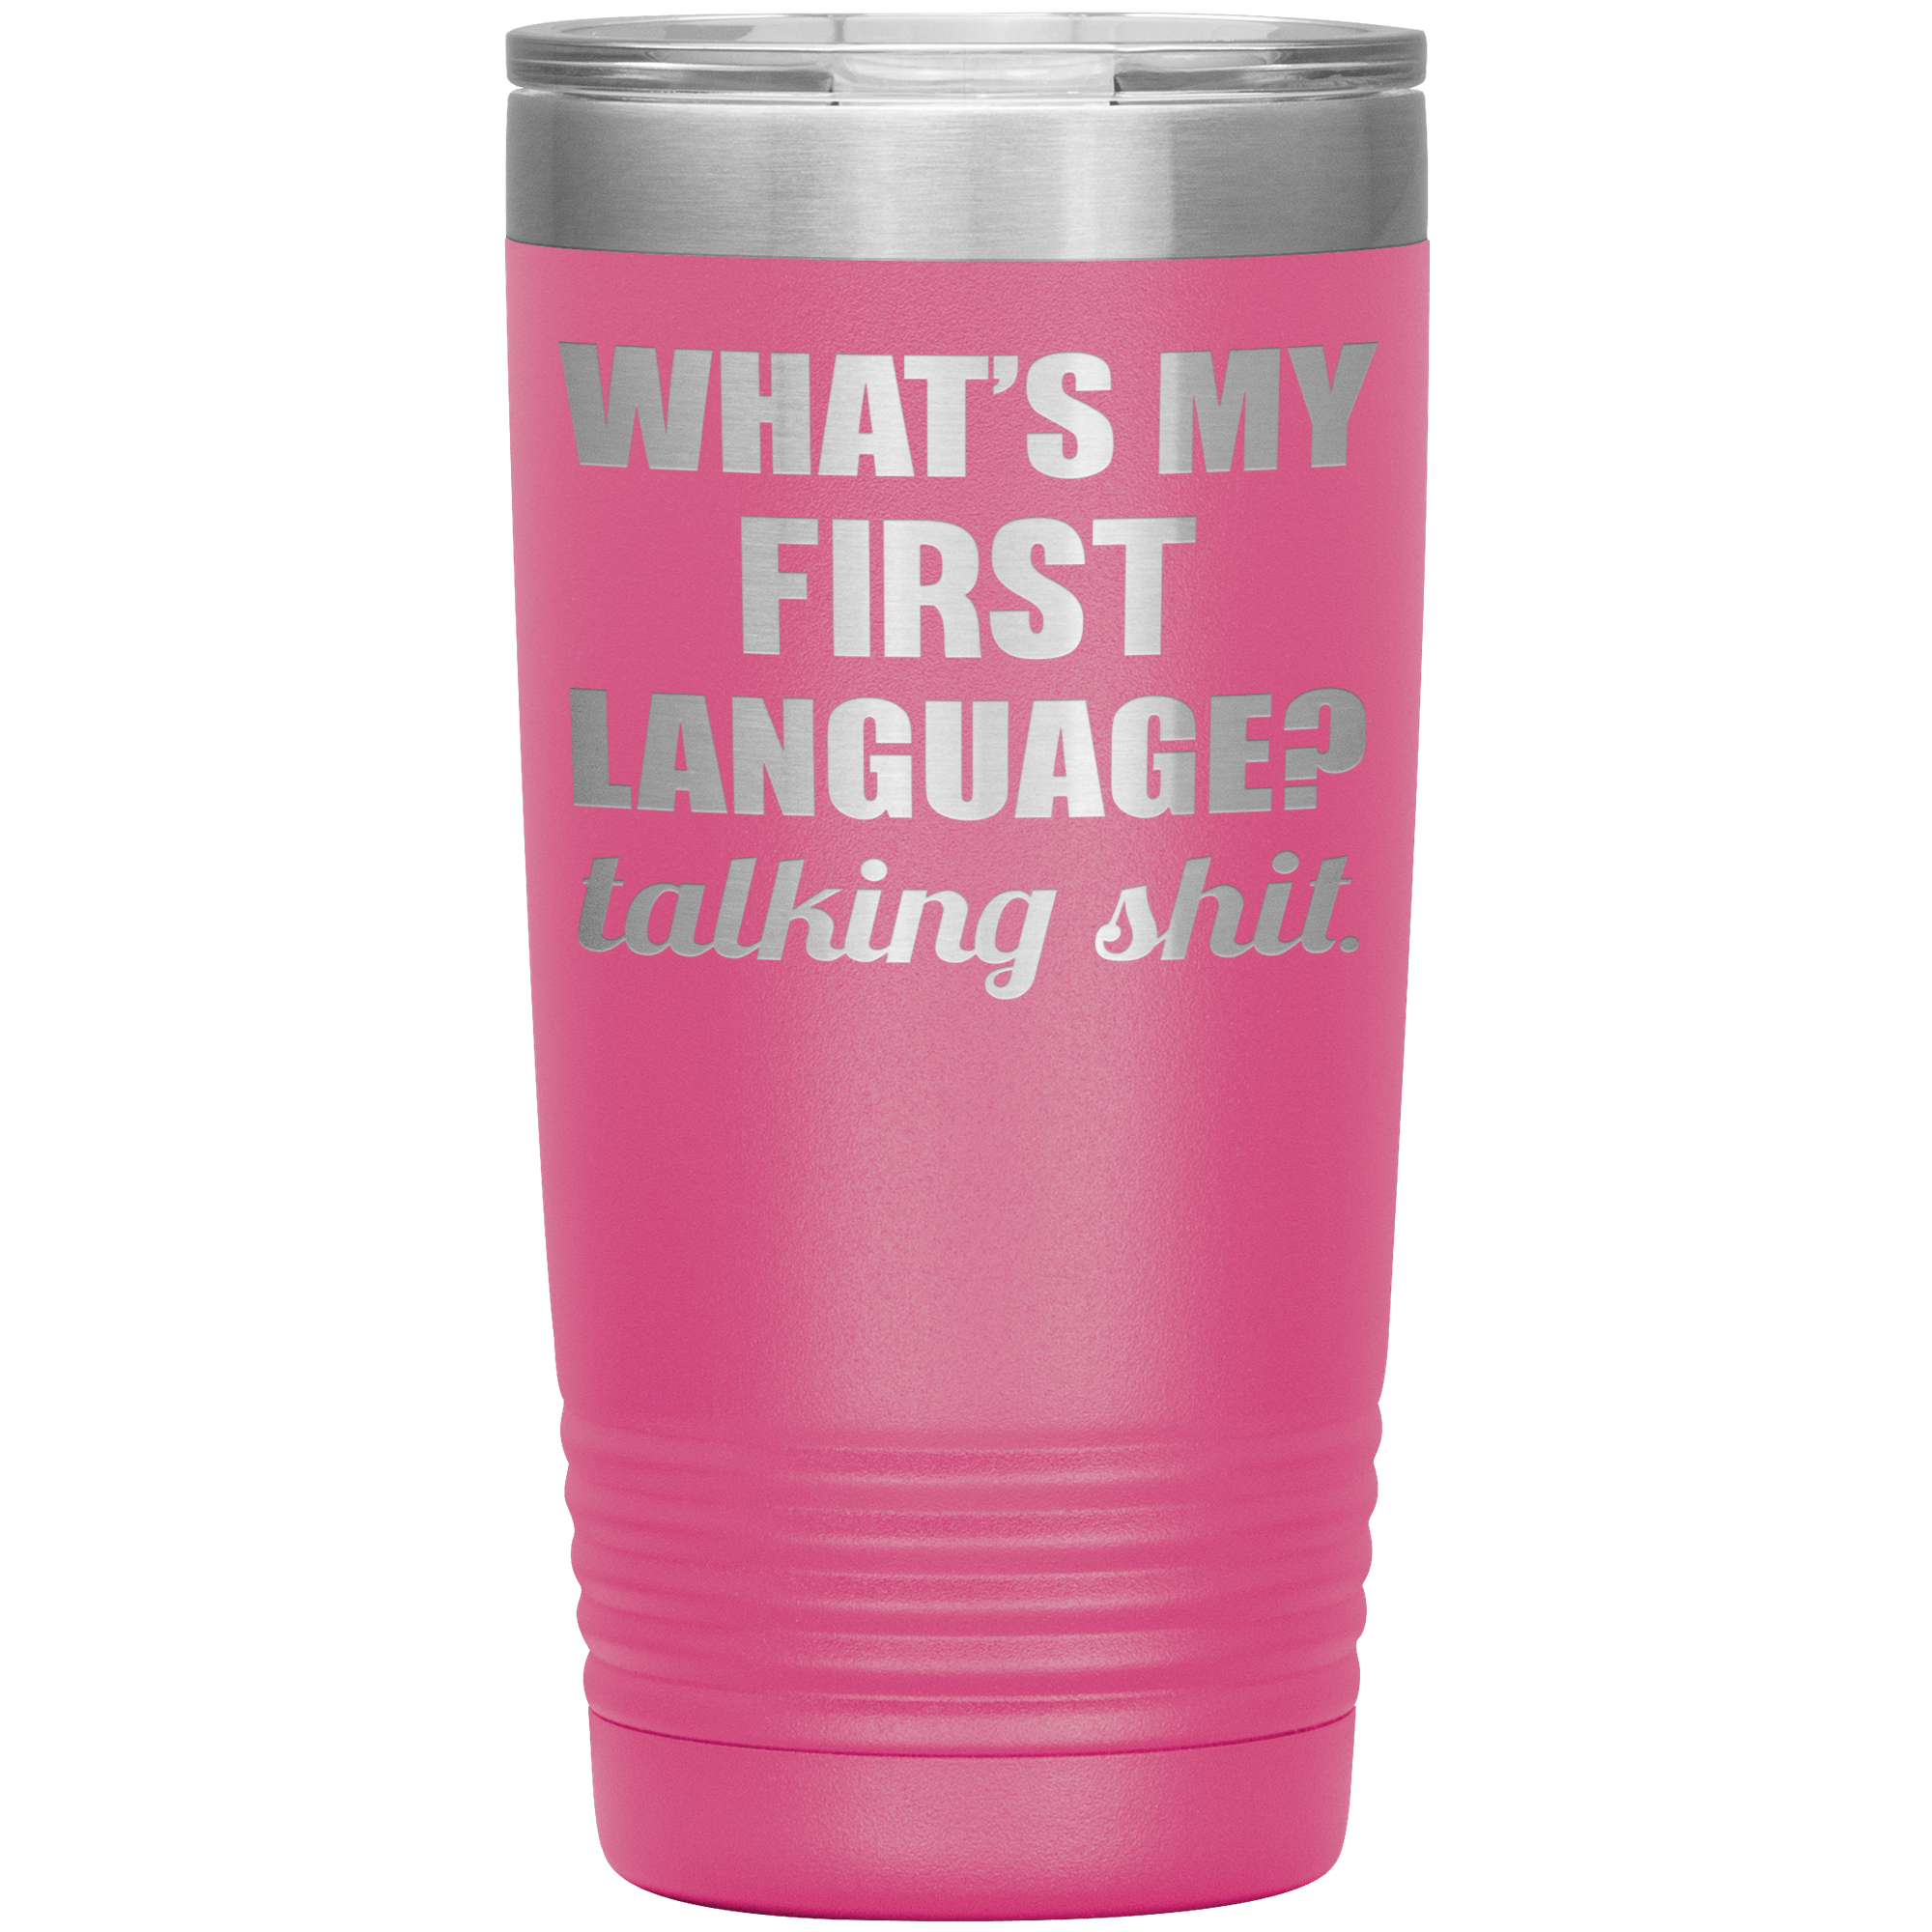 " TALKING SHIT IS MY FIRST LANGUAGE " TUMBLER